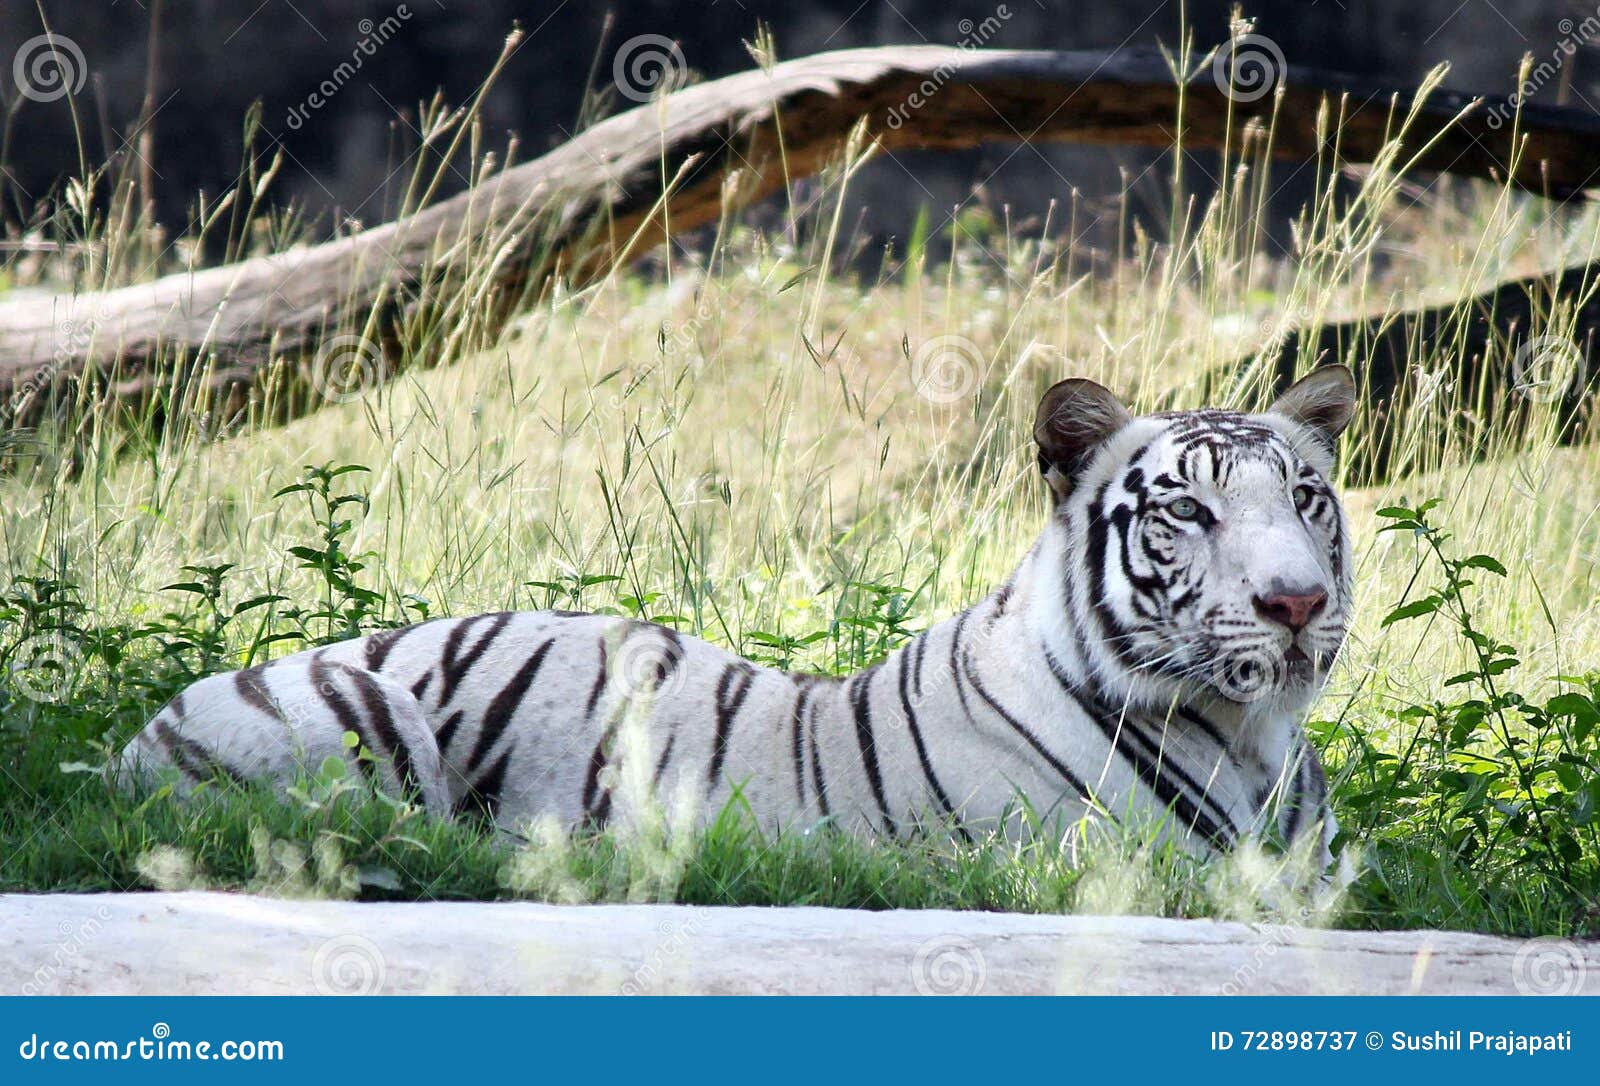 A Rare Extinct Animal White Tigress Name 